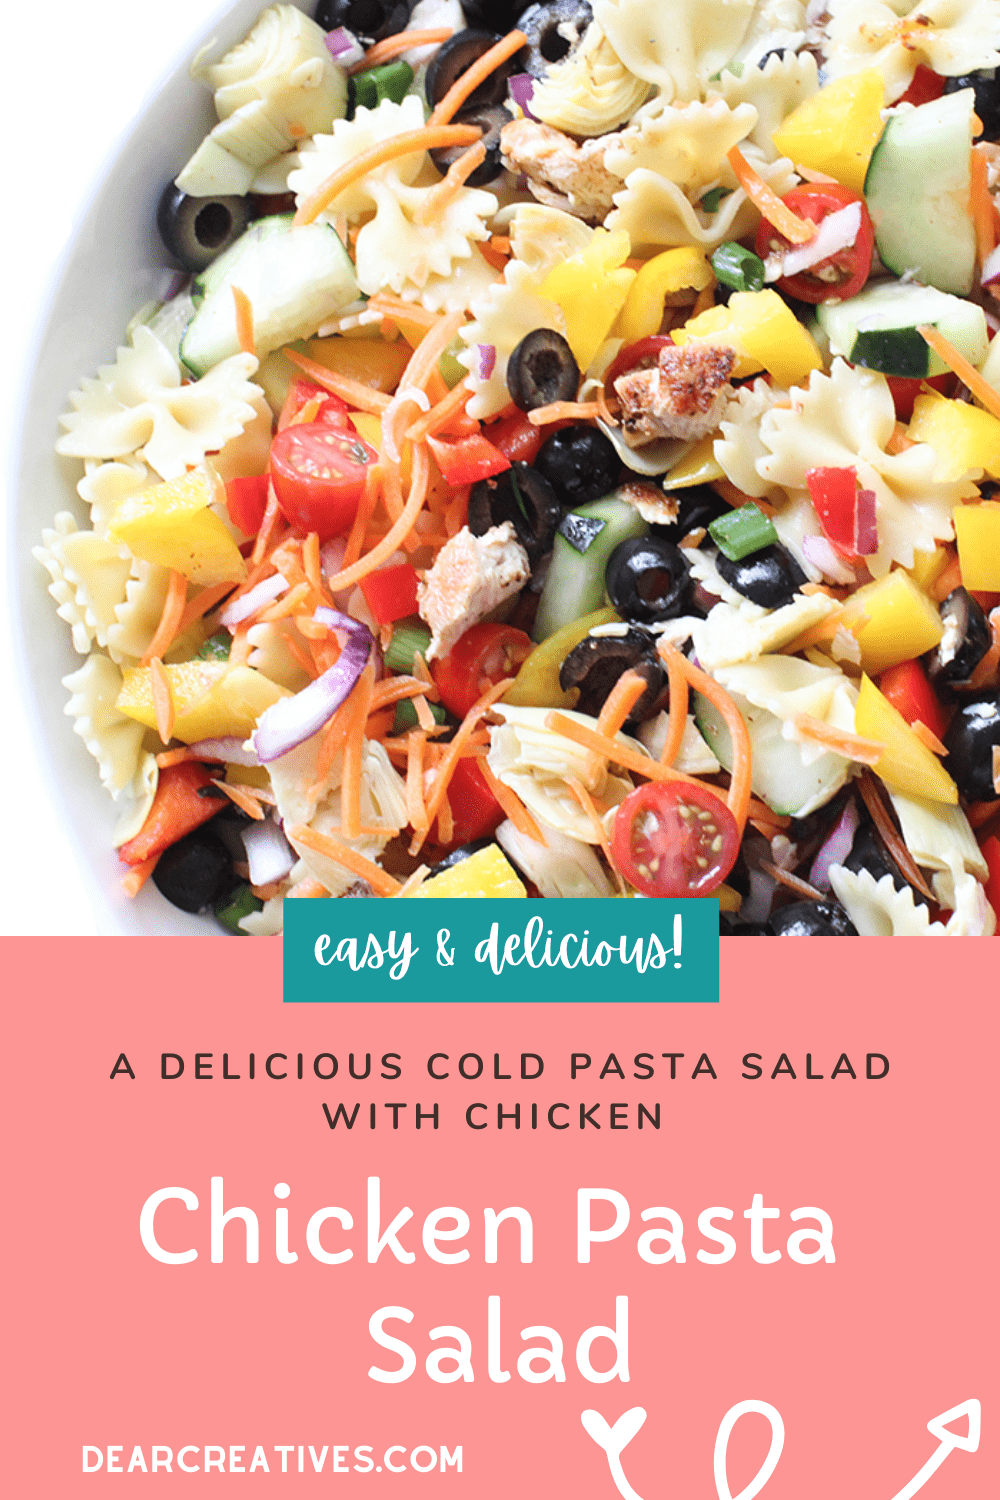 Chicken Pasta Salad – A Tasty Pasta Salad With Chicken